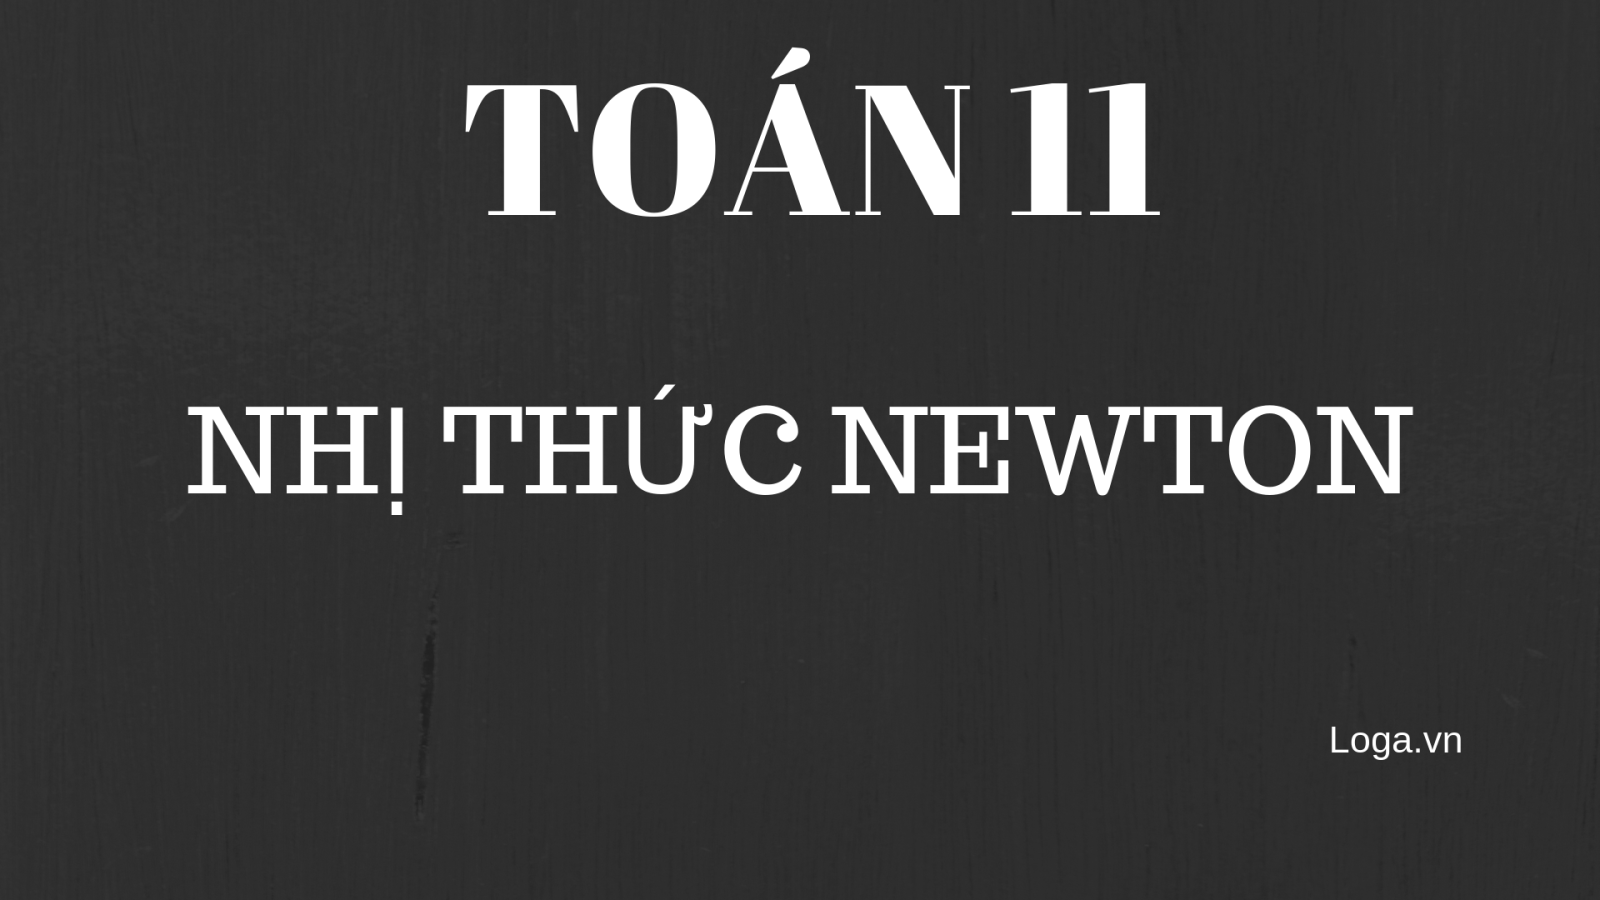 toan-11-nhi-thuc-newton